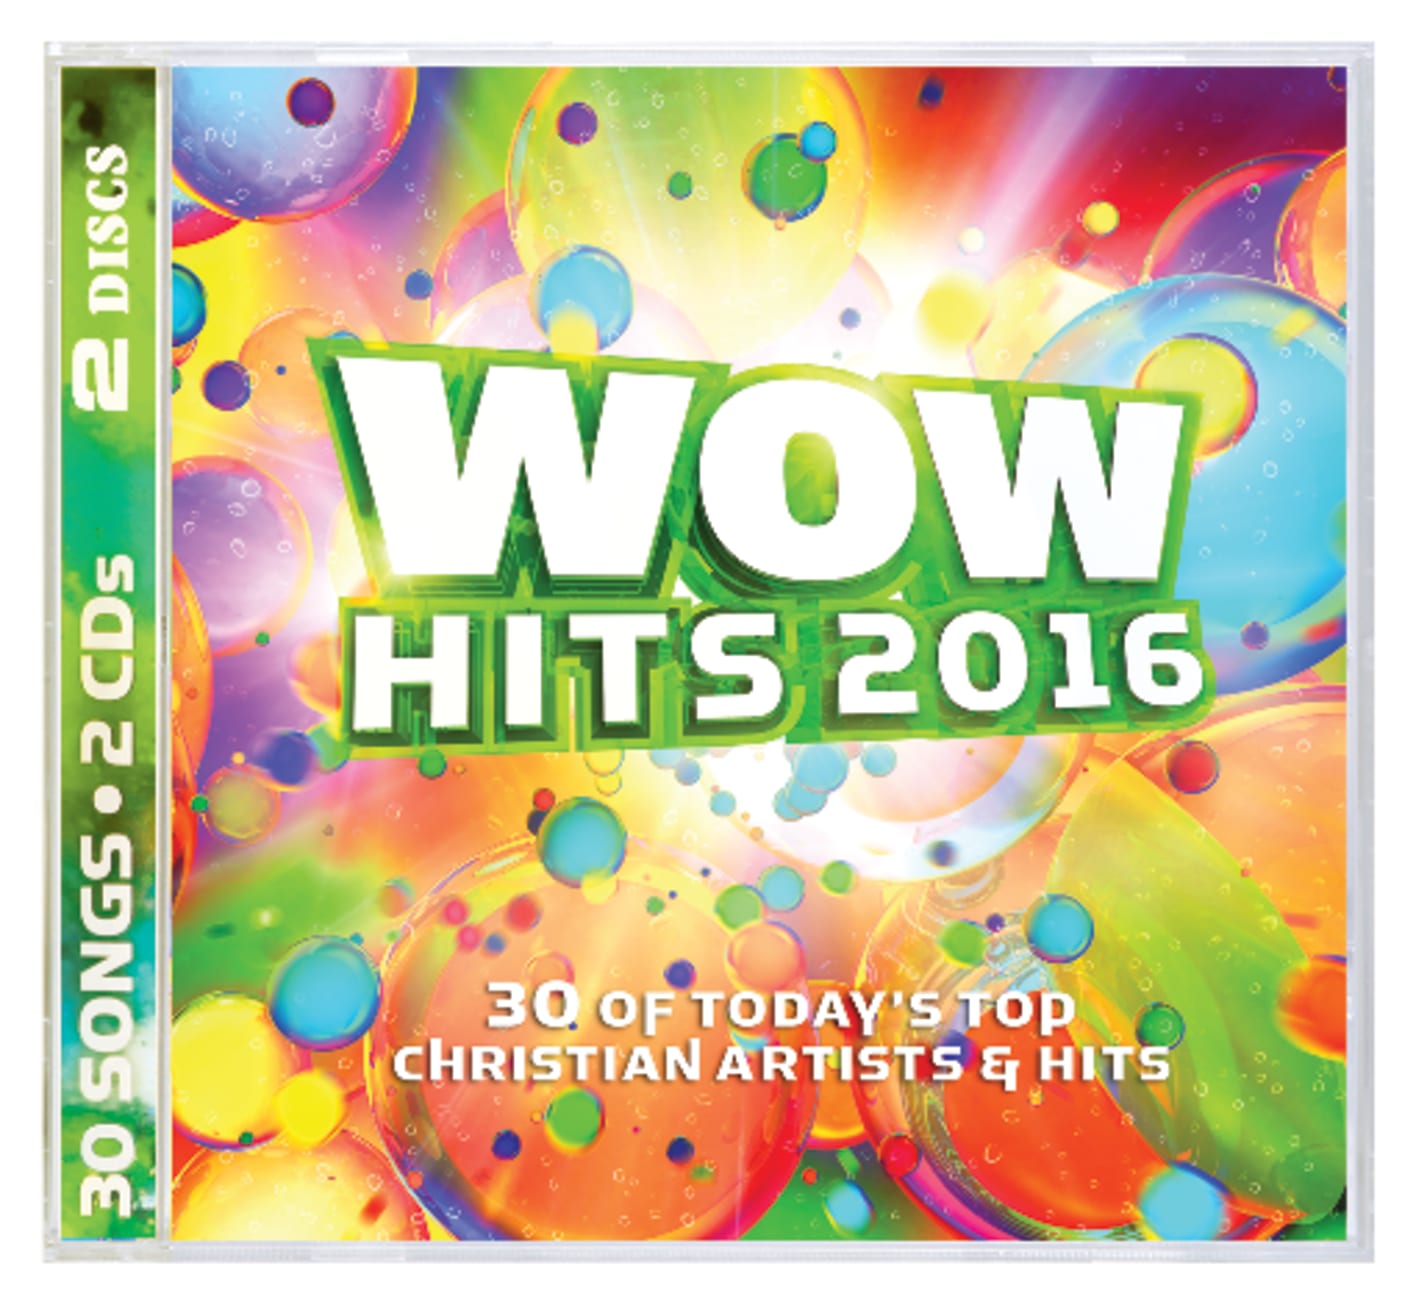 Wow Hits 2016 Double CD CD